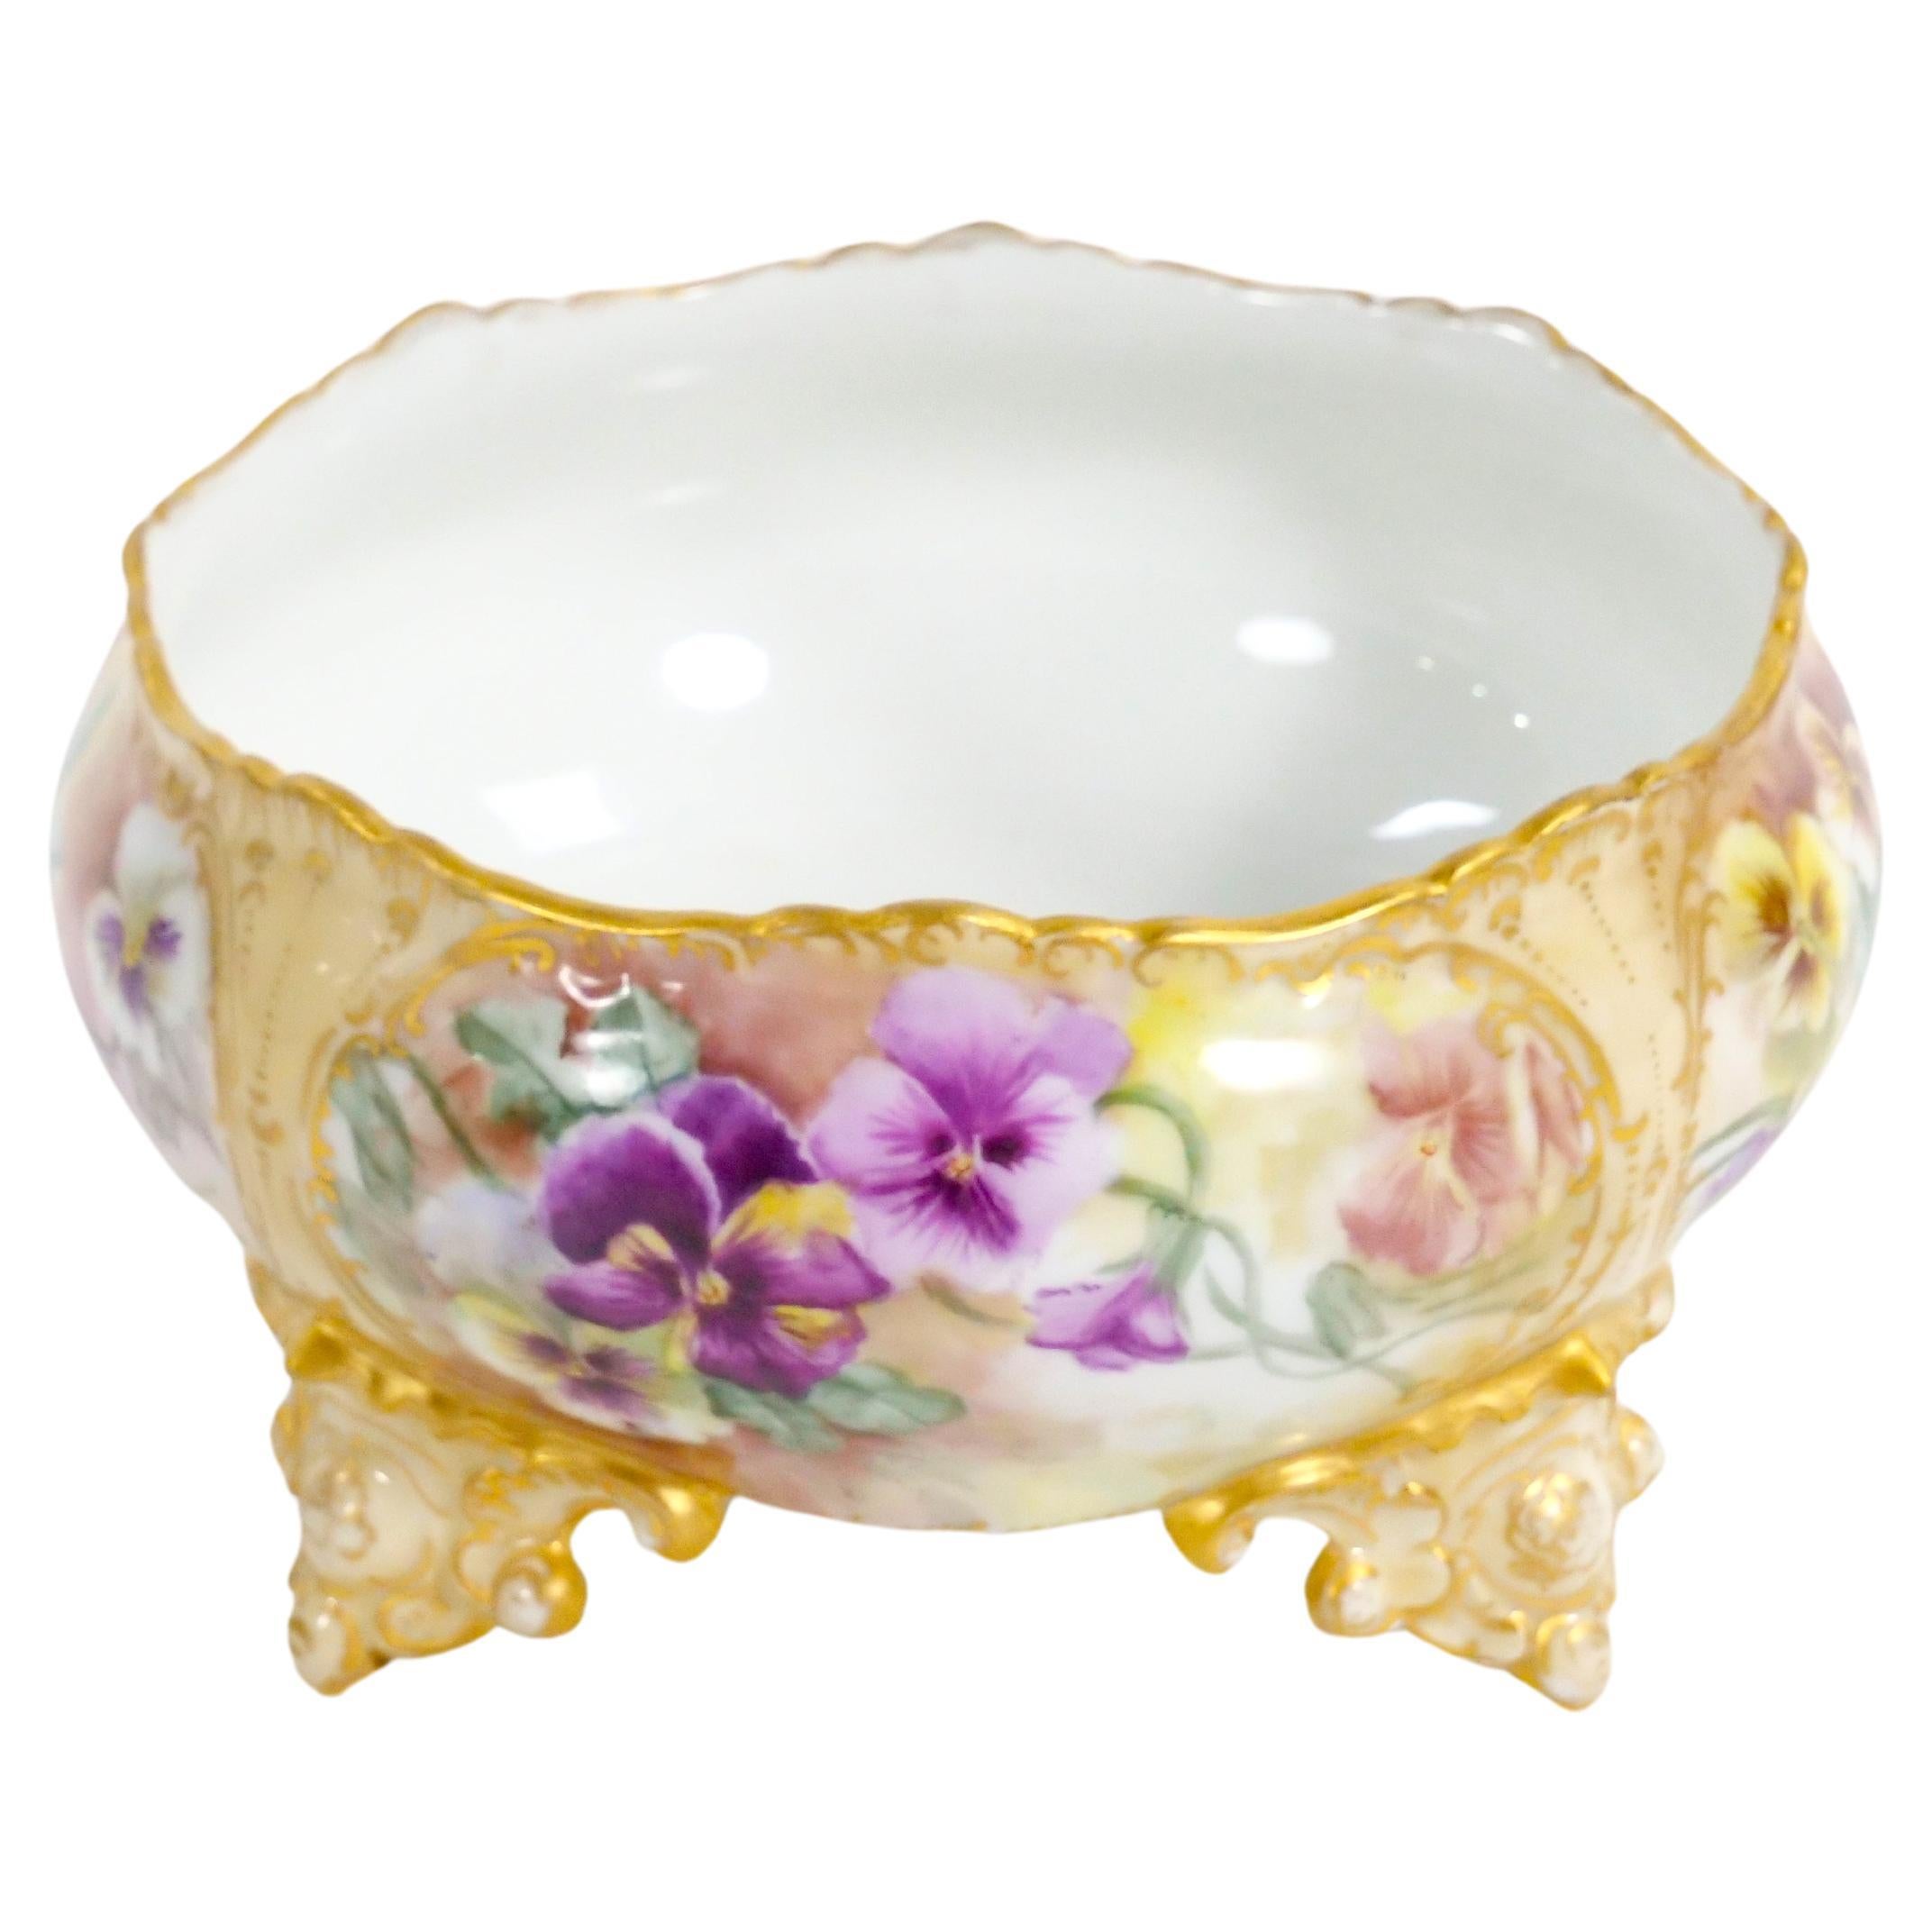 Rehaussez votre salle à manger ou votre décor avec ce magnifique bol à pied en porcelaine de Limoges, peint à la main et décoré à l'or fin. Cette pièce exquise est une véritable œuvre d'art qui rayonne d'élégance et de charme. Le centre de table est